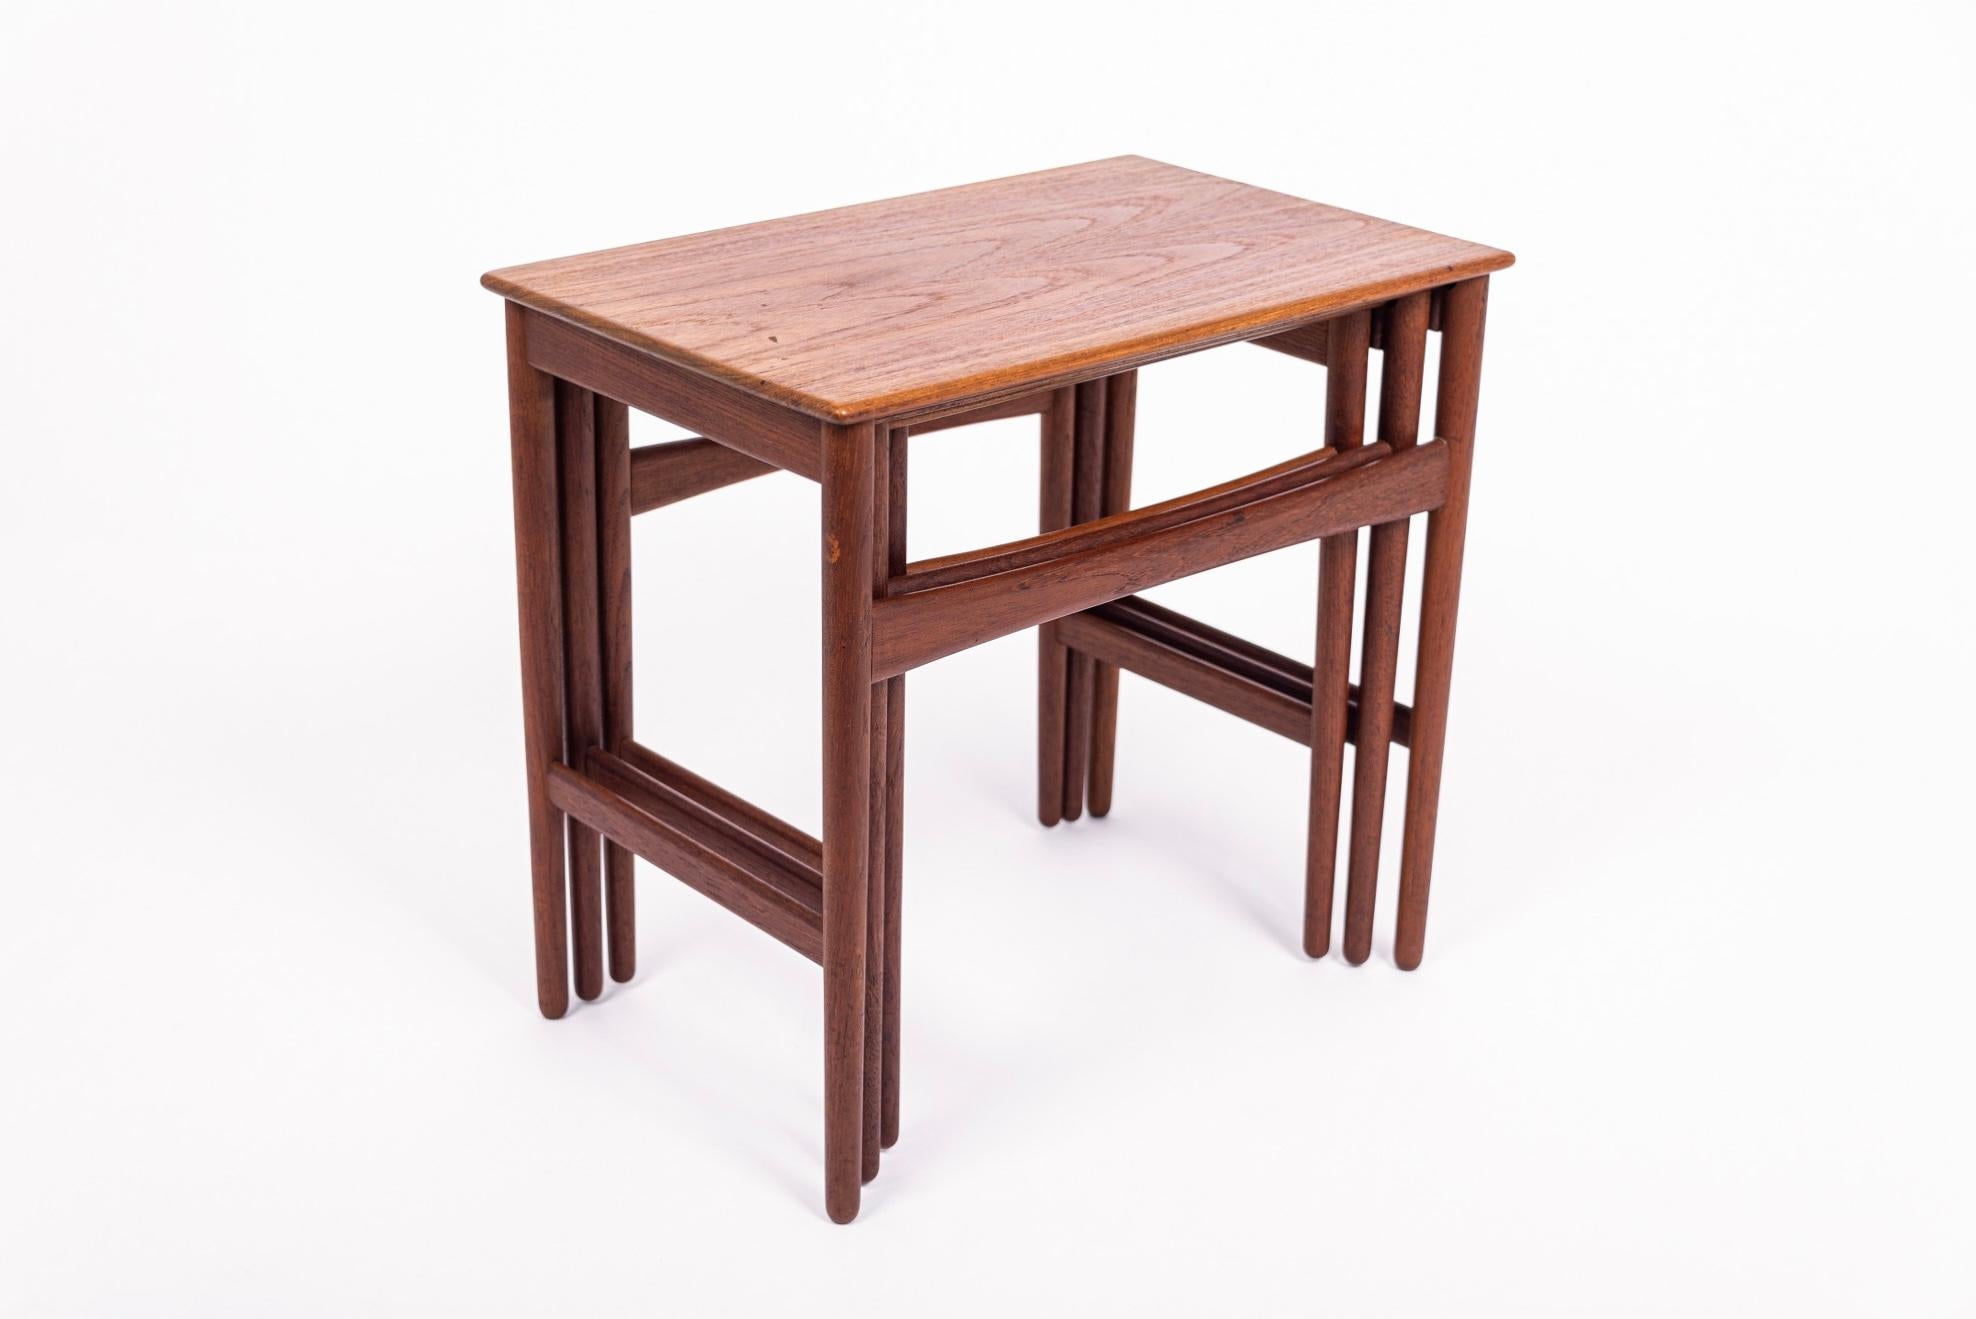 Cet ensemble iconique de tables gigognes danoises modernes du milieu du siècle, modèle AT-40, a été conçu par Hans J. Wegner, produit par l'ébéniste Andreas Tuck et fabriqué au Danemark vers 1960. Cet ensemble de trois tables gigognes élégantes